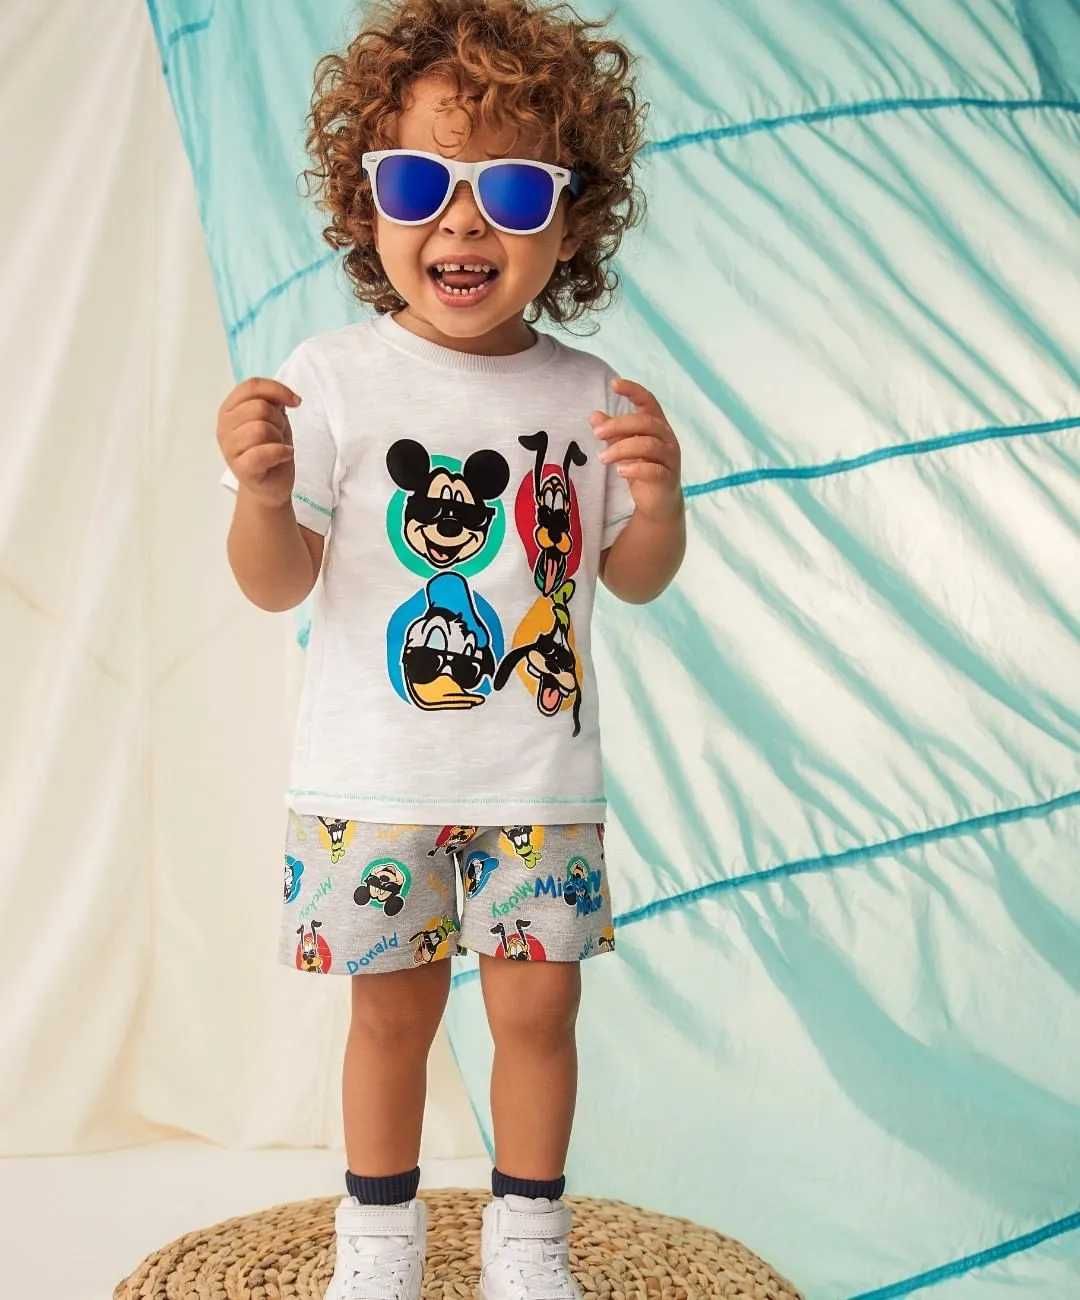 Сток оптом дитячий одяг Primark Англія стокові речі гуртові ціни